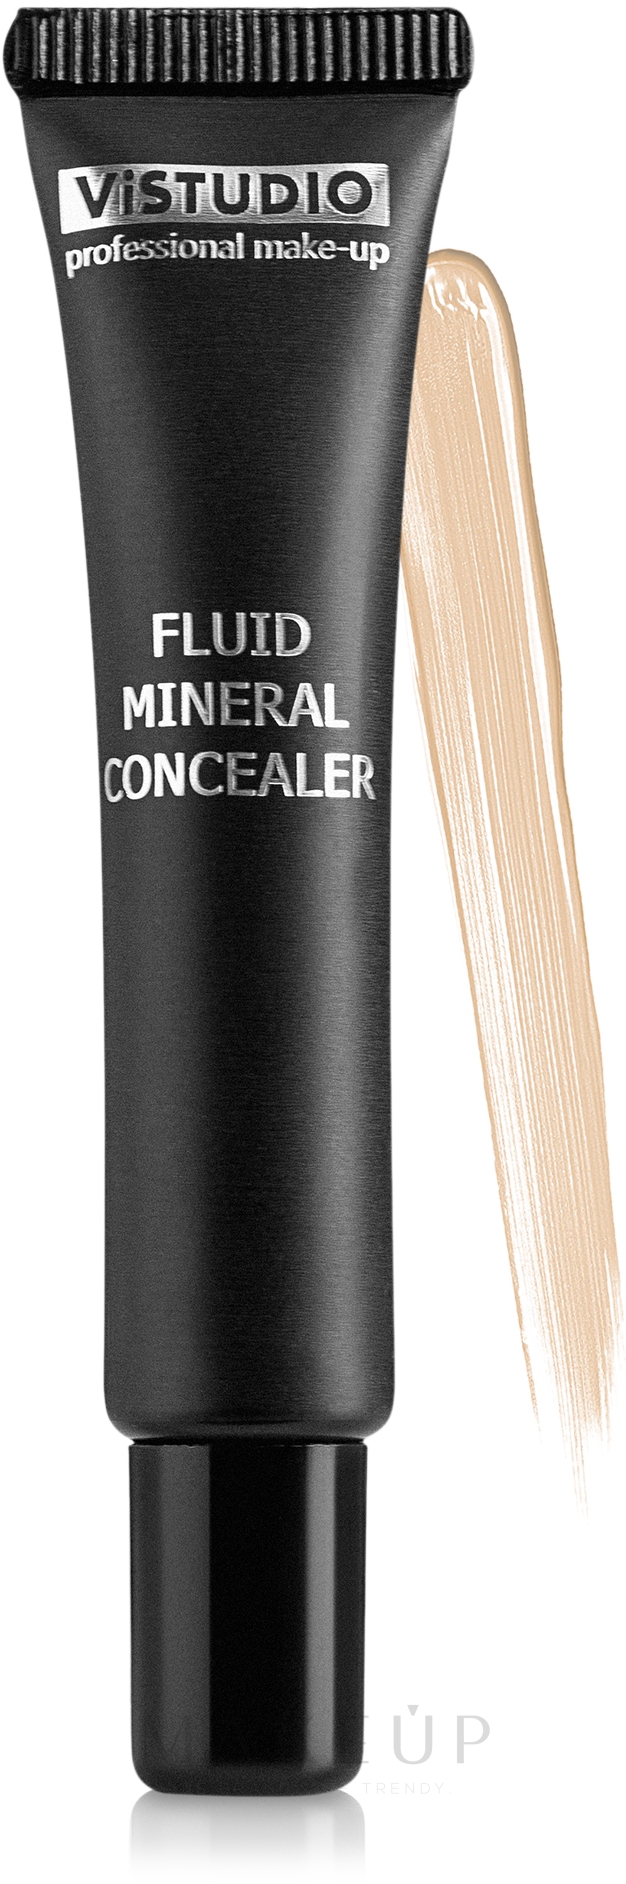 Mineralhaltiger Concealer - ViSTUDIO Fluid Mineral Concealer — Bild 02 (NB)